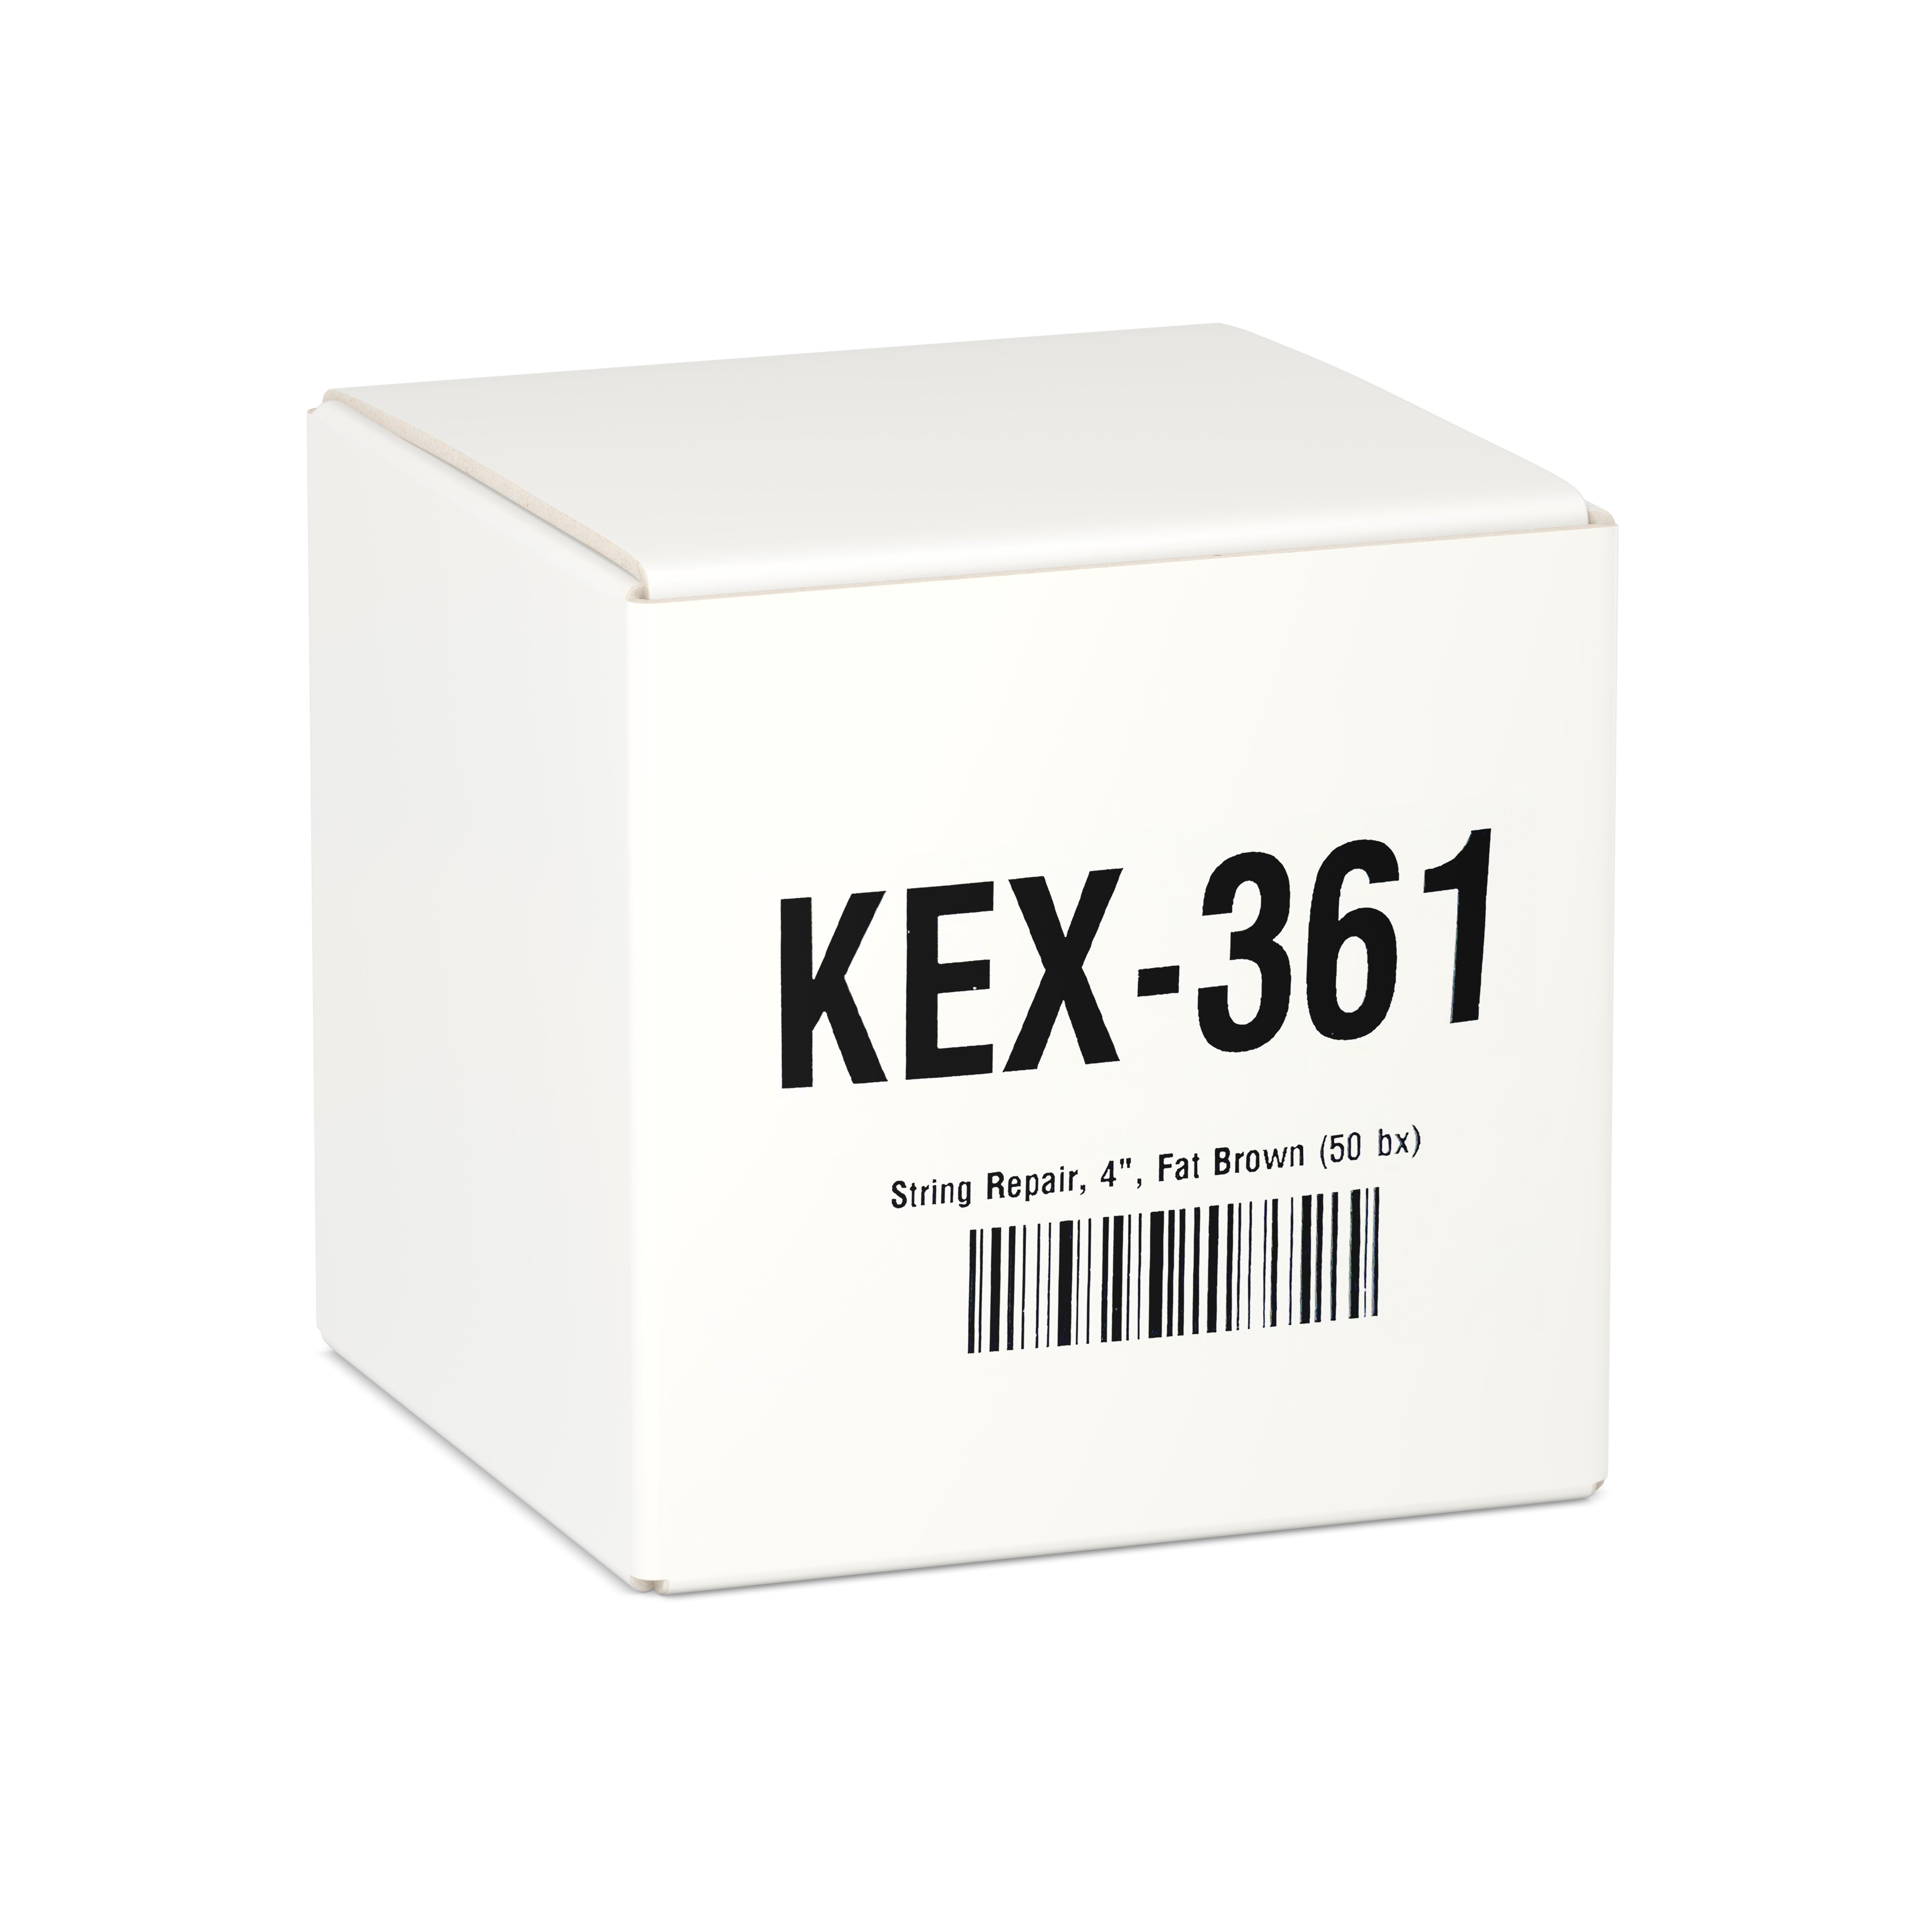 Kex 361 Tire Repair String, 4", Fat Brown (50 bx)